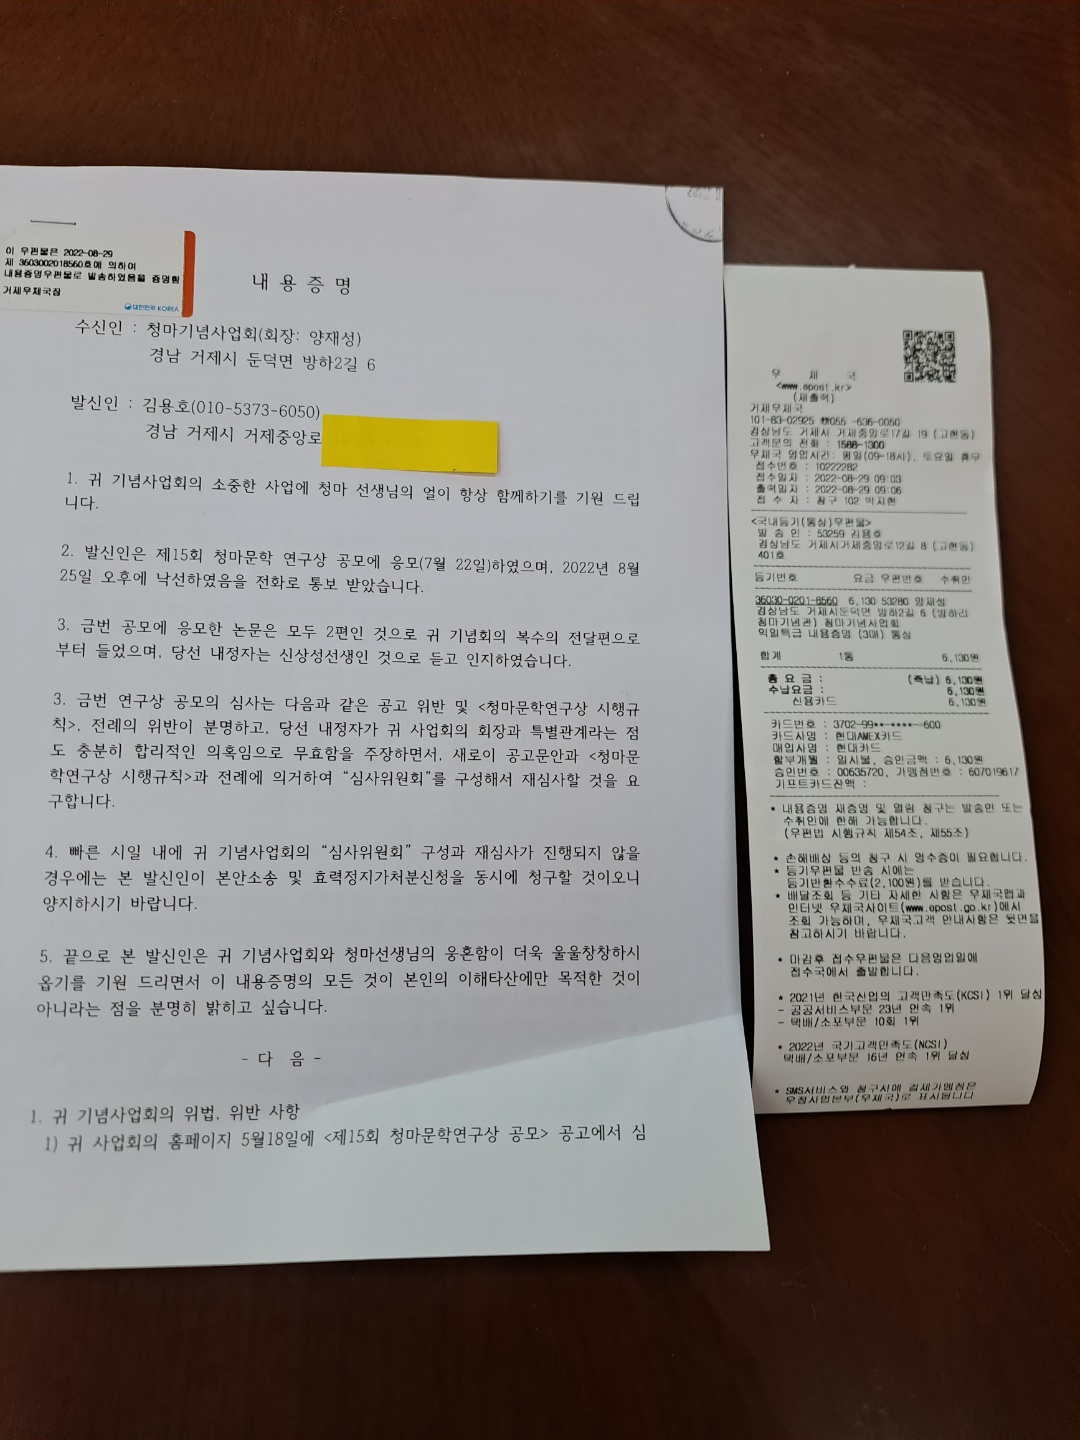 김용호 회원이 청마기념사업회에 보낸 내용증명